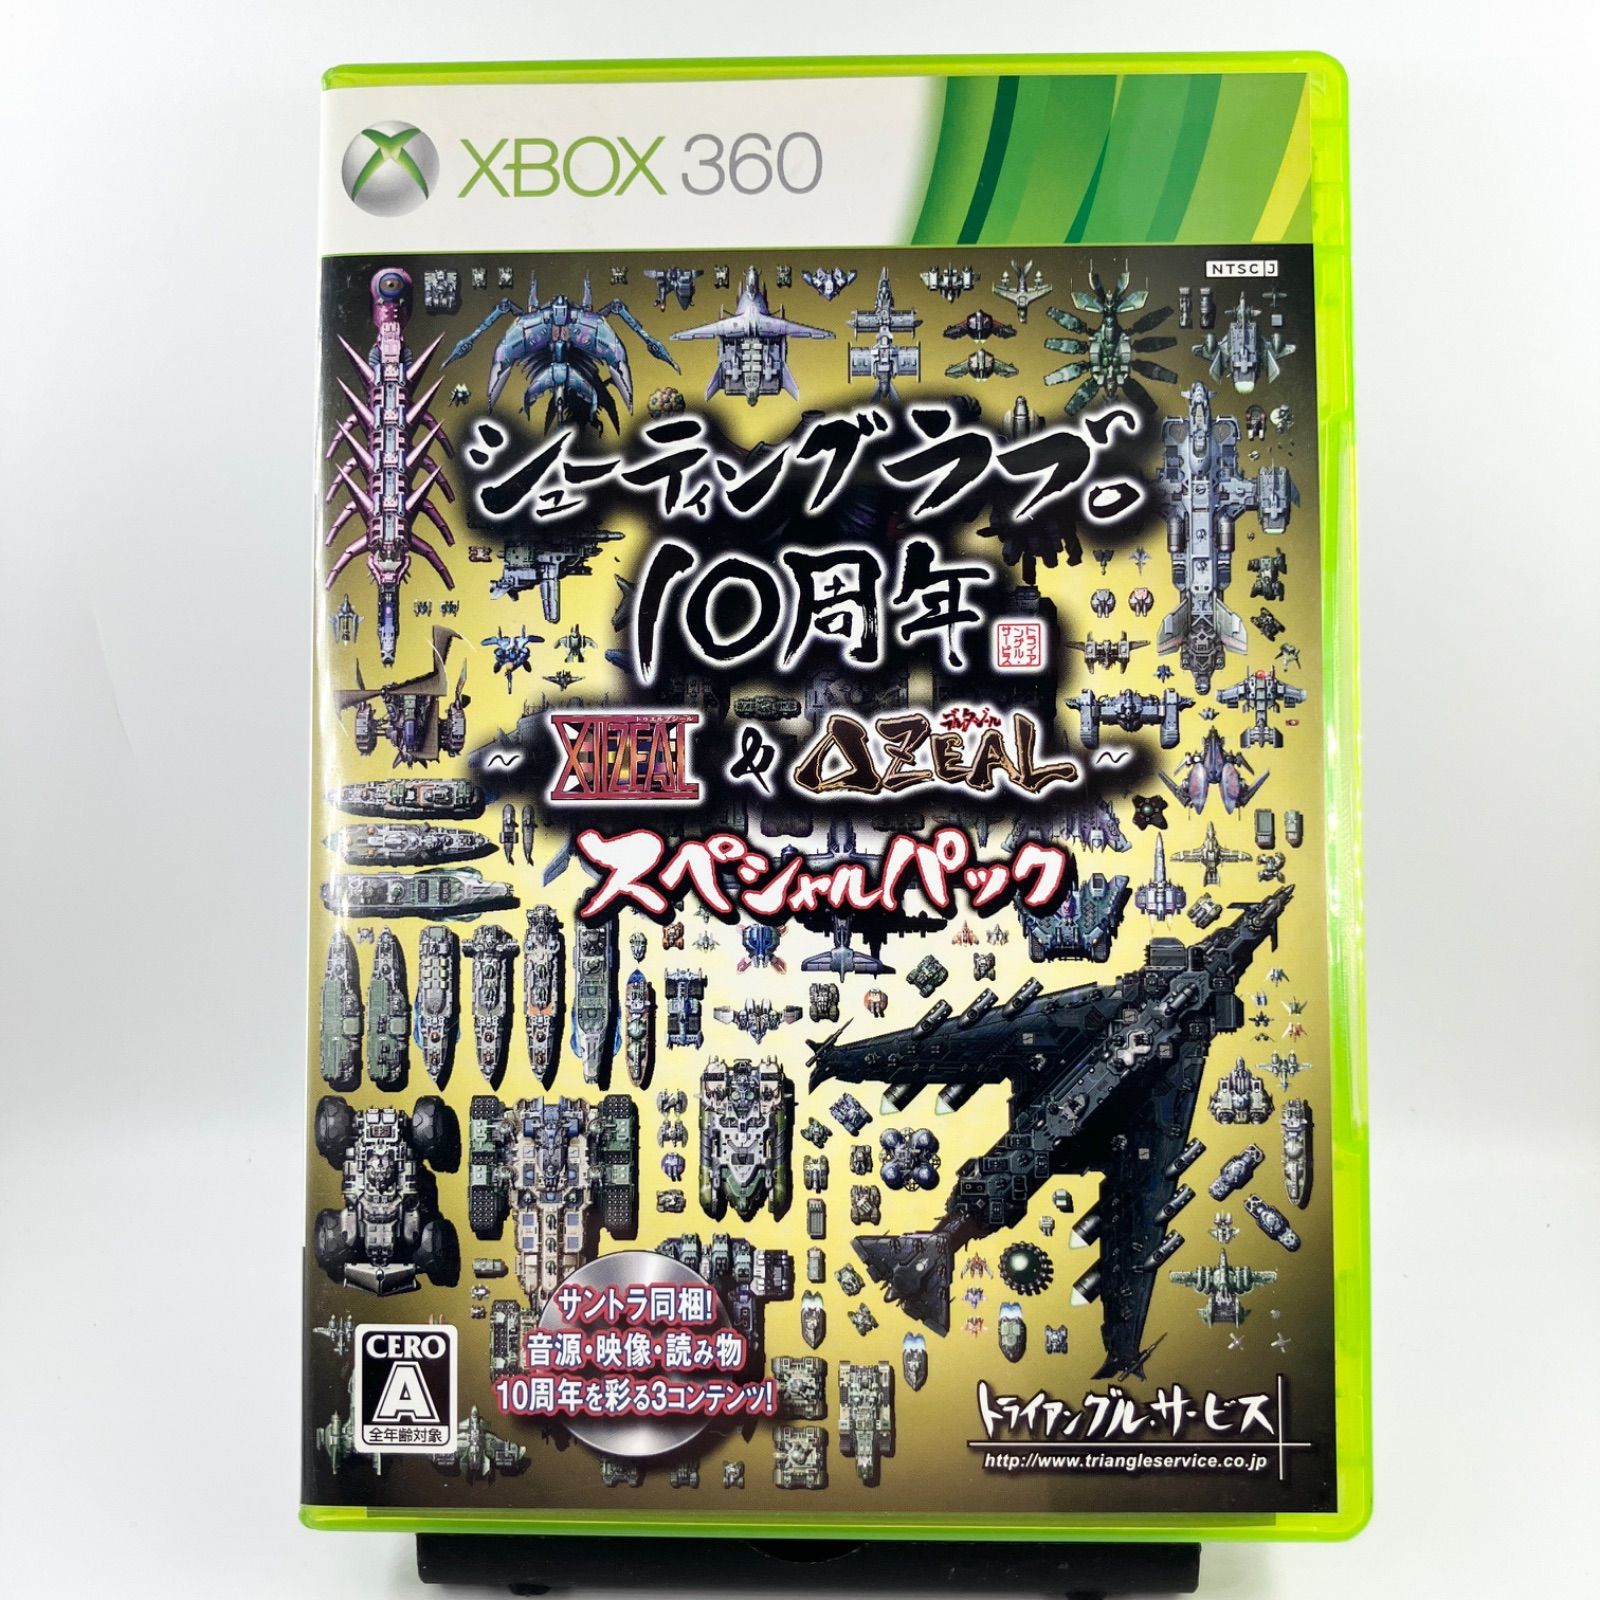 Xbox360 シューティングラブ。10周年 ~XIIZEAL & ZEAL~ スペシャル 